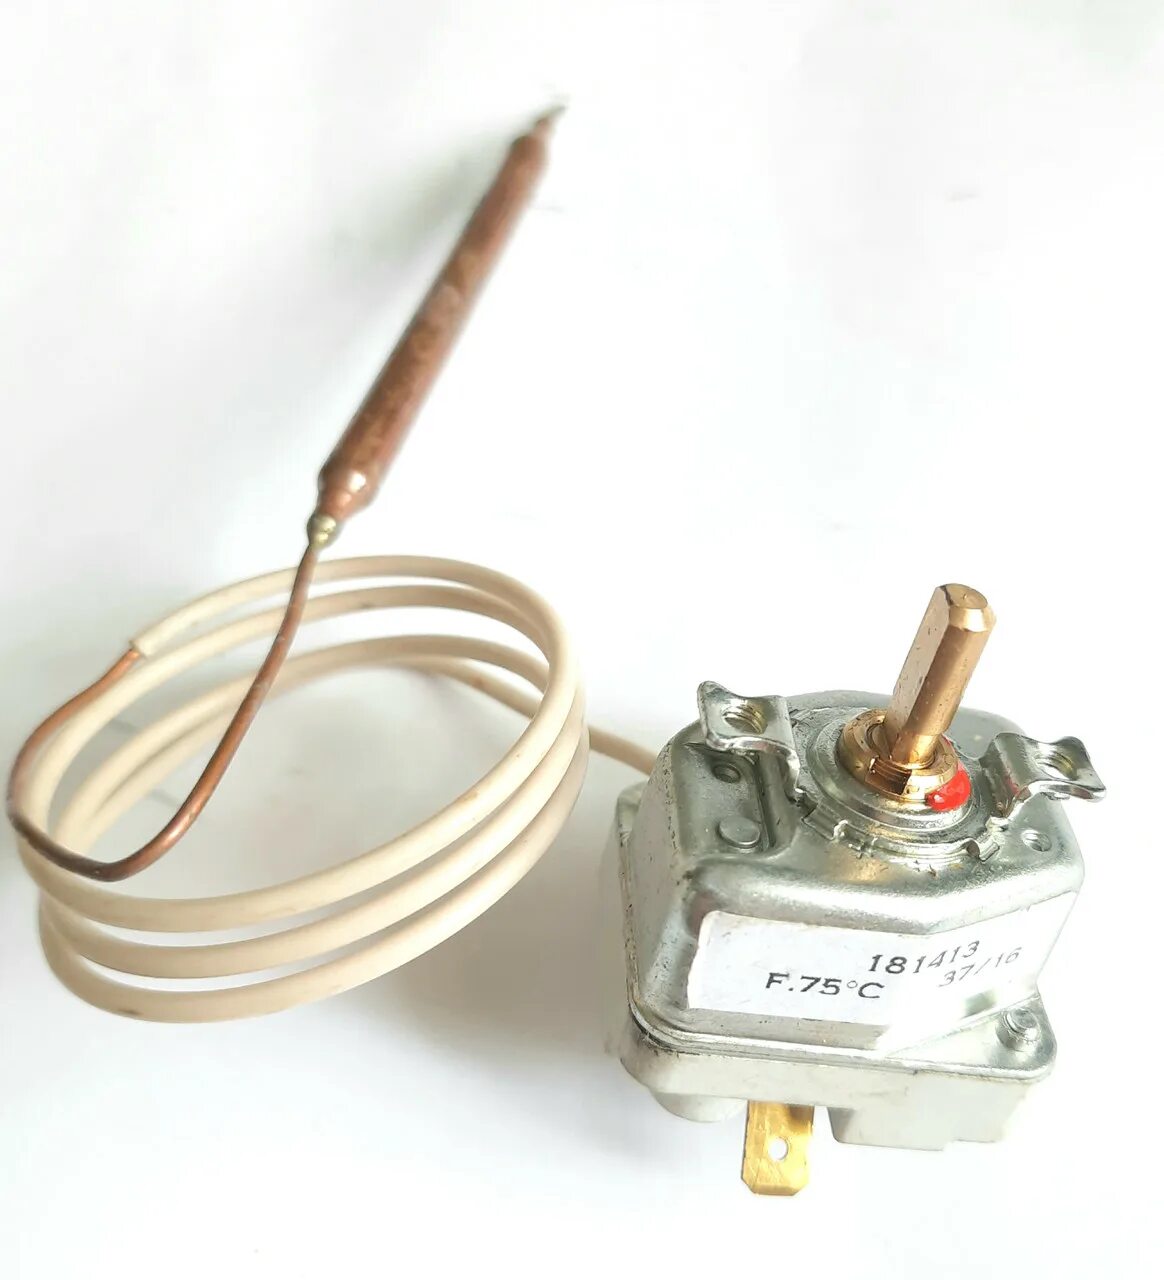 Термостат для водонагревателя Термолюкс. Термостат для бойлера METALFLEX Tip KV-441 r8. Терморегулятор (термостат) водонагревателя tr001, 3412120. Термостат для бойлера c4-036 082 010 1810 x.